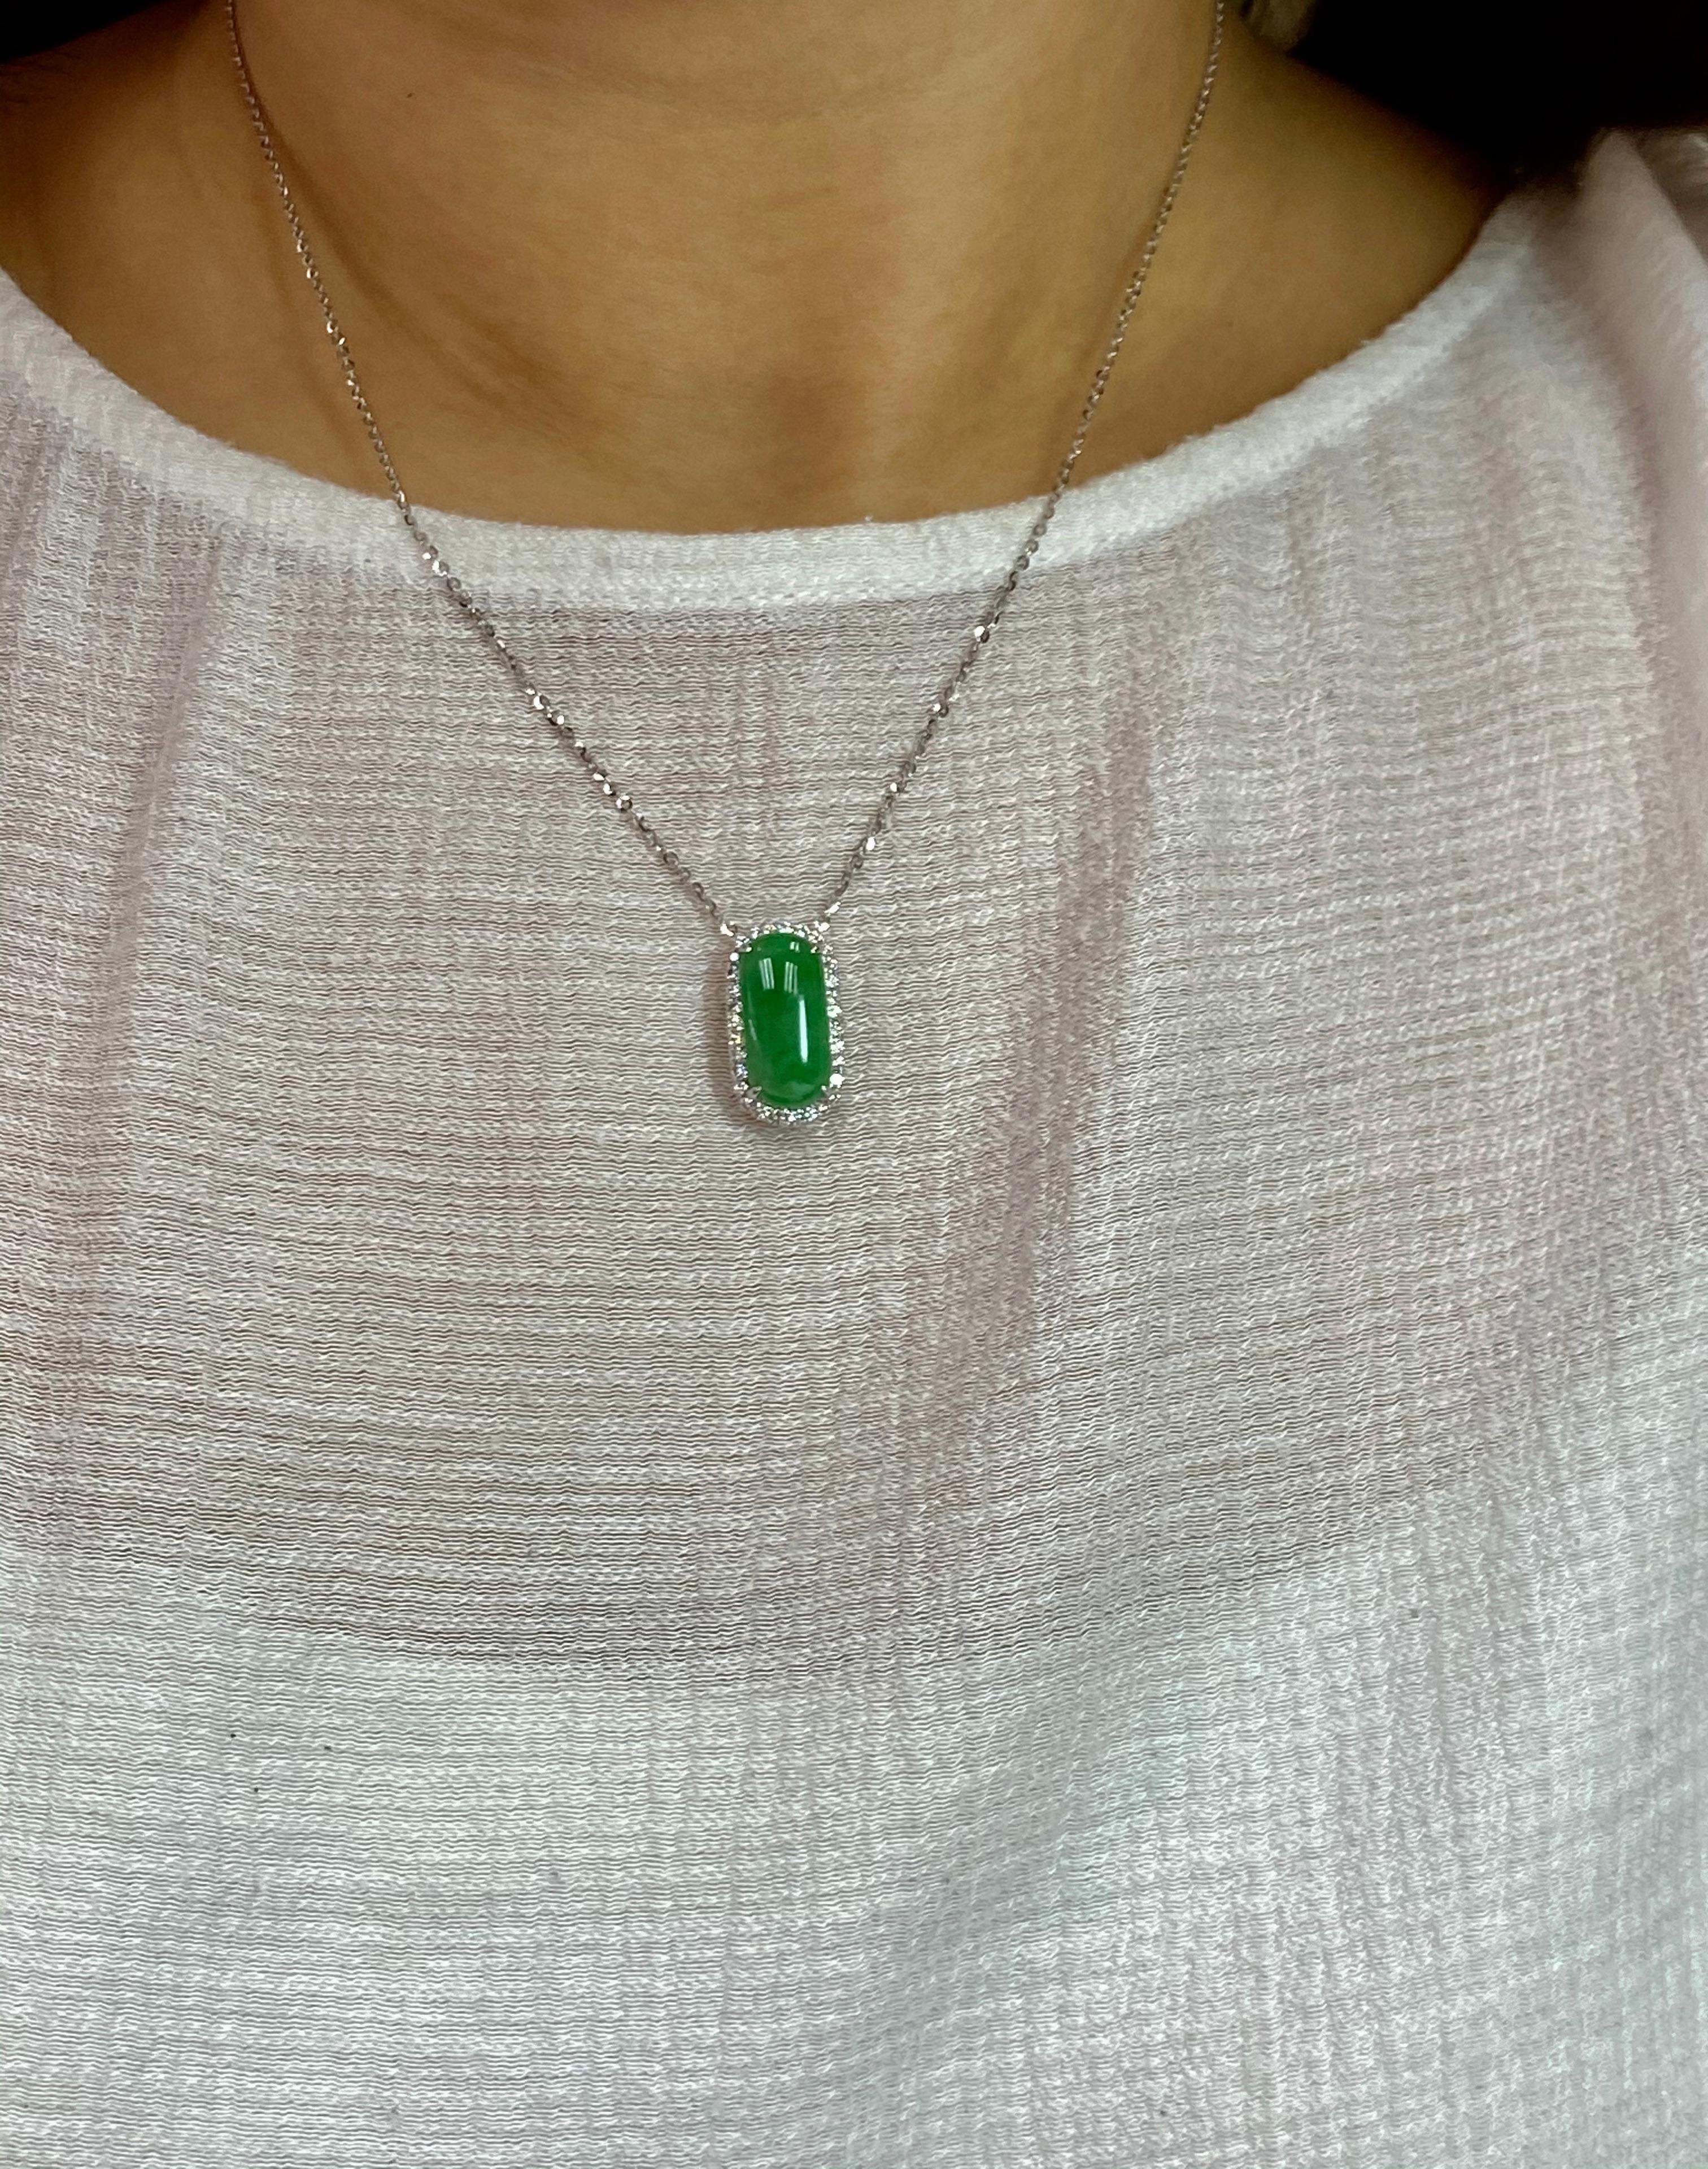 Certified Type A Jadeite Jade Diamond Pendant Drop Necklace, Apple Green Color For Sale 6